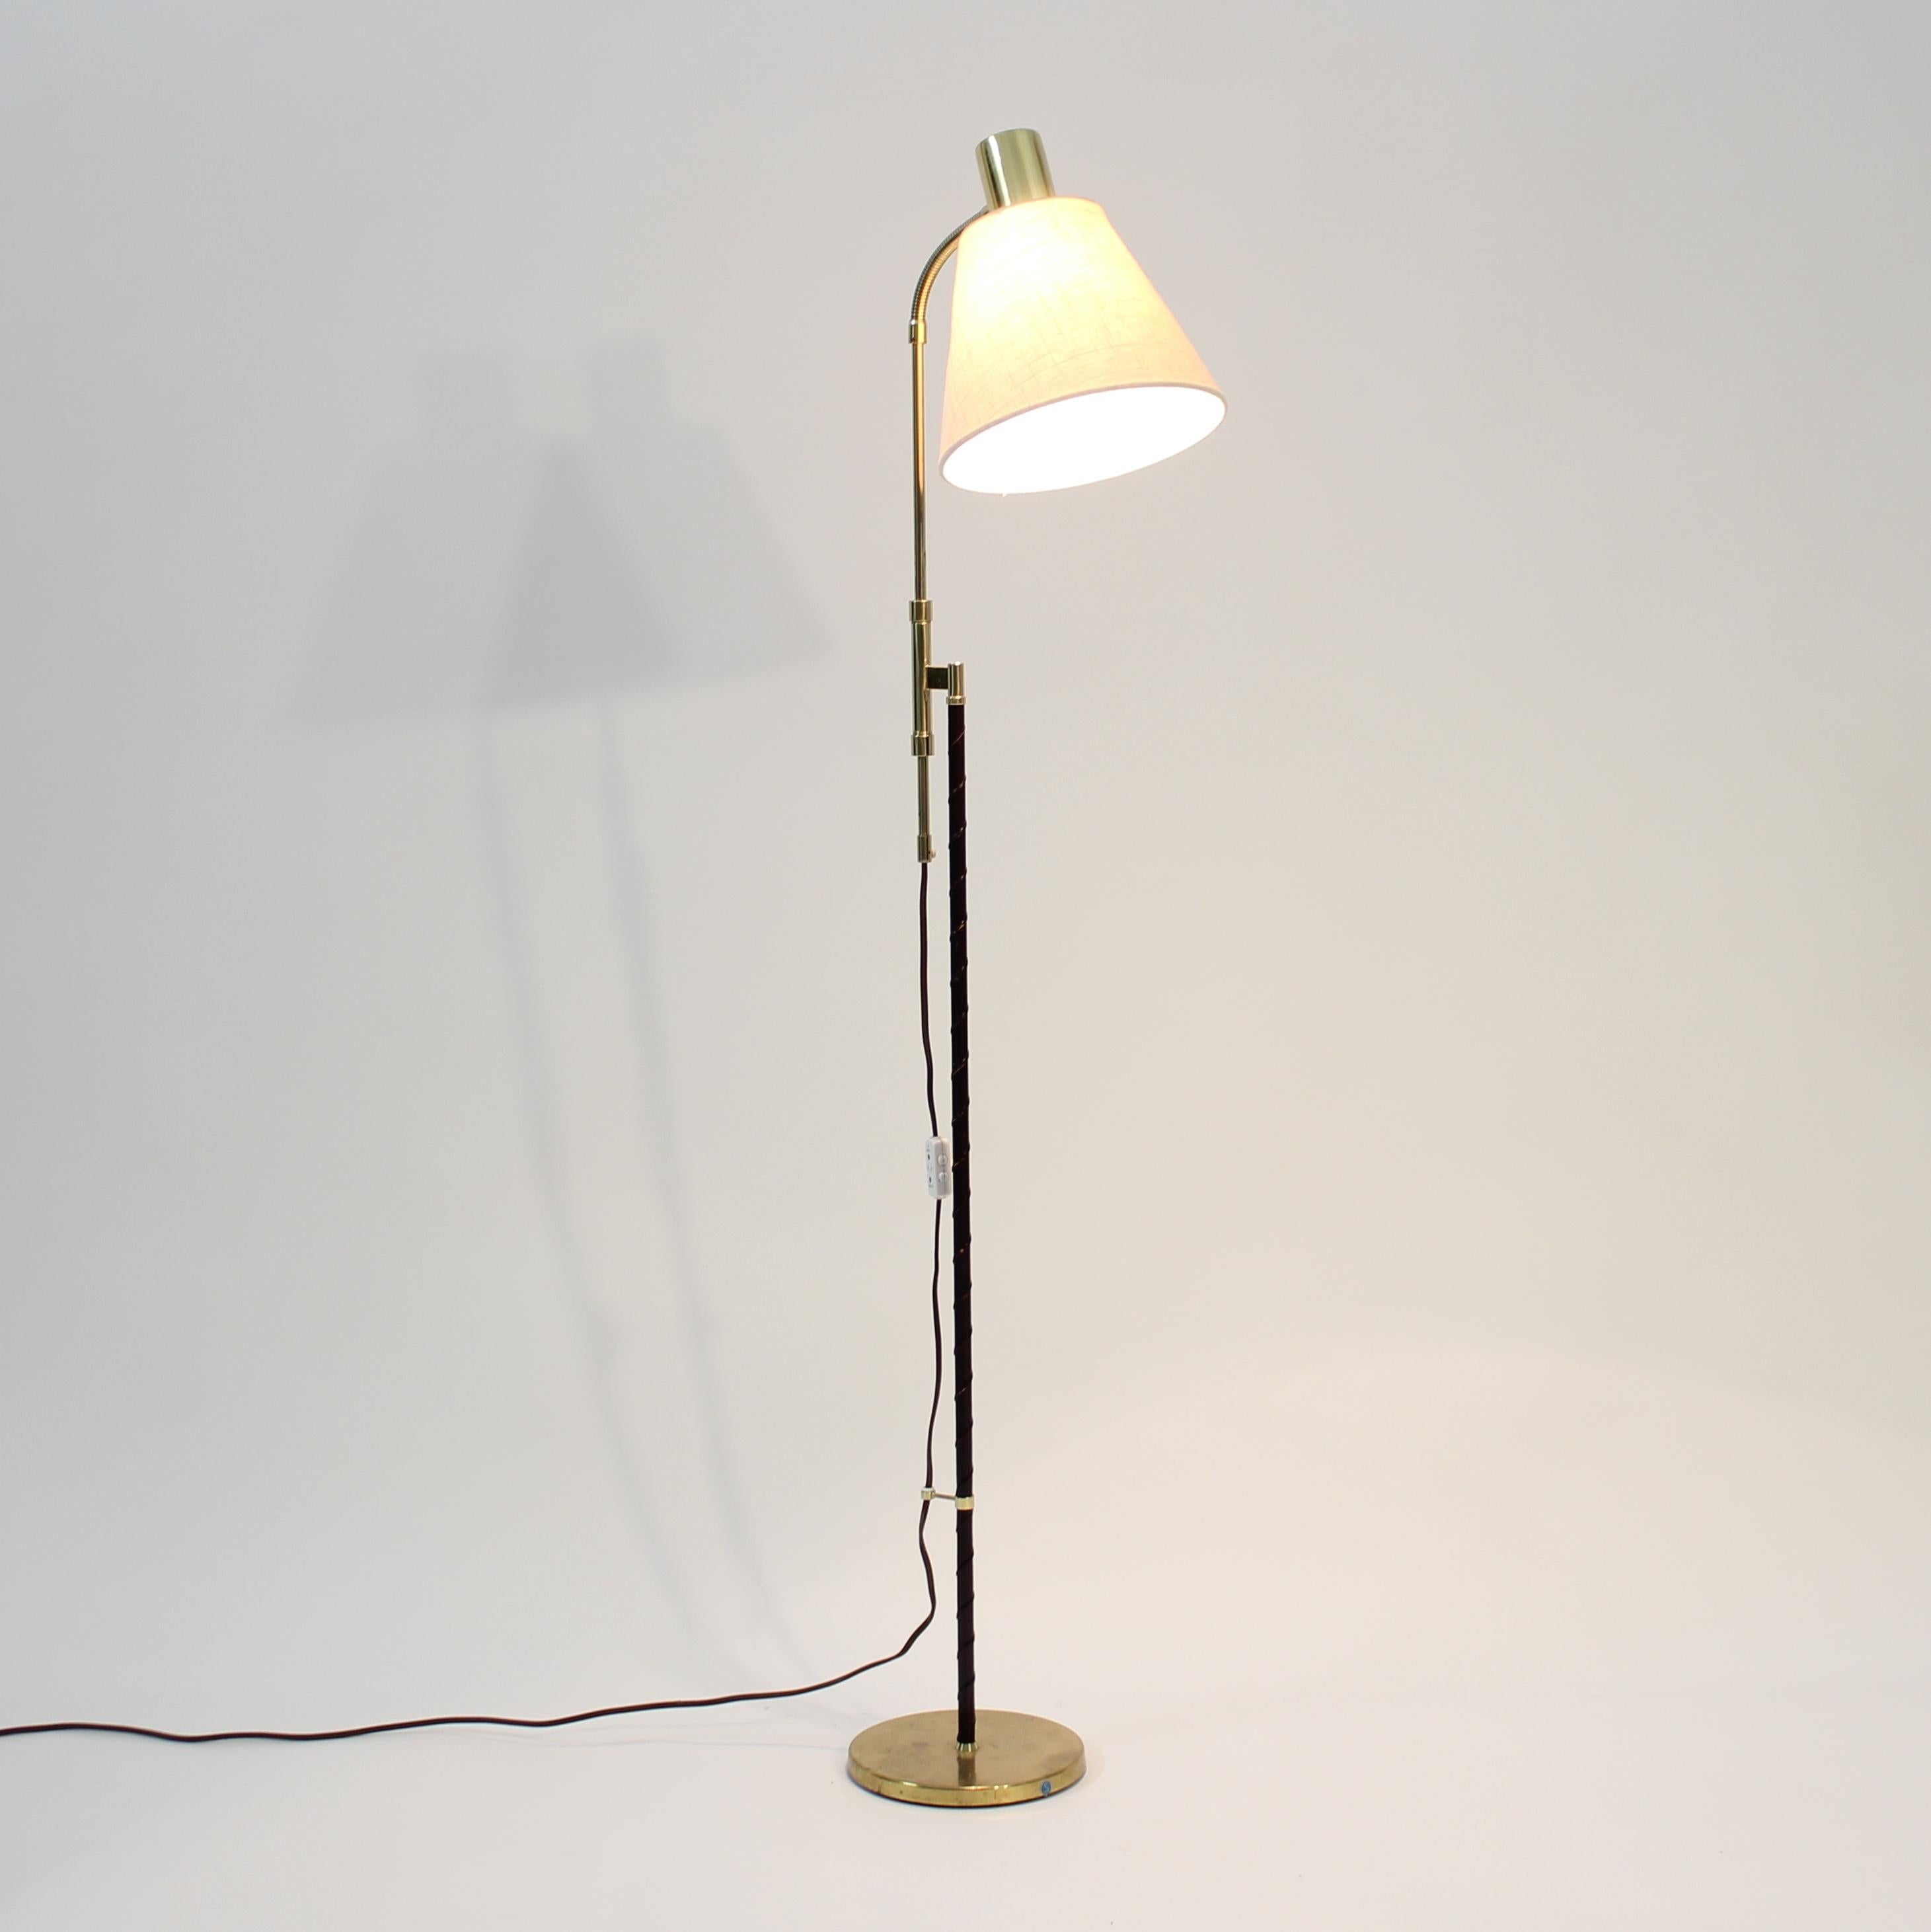 Swedish height adjustable floor lamp by MAE (Möller Armatur Eskilstuna), 1960s For Sale 3